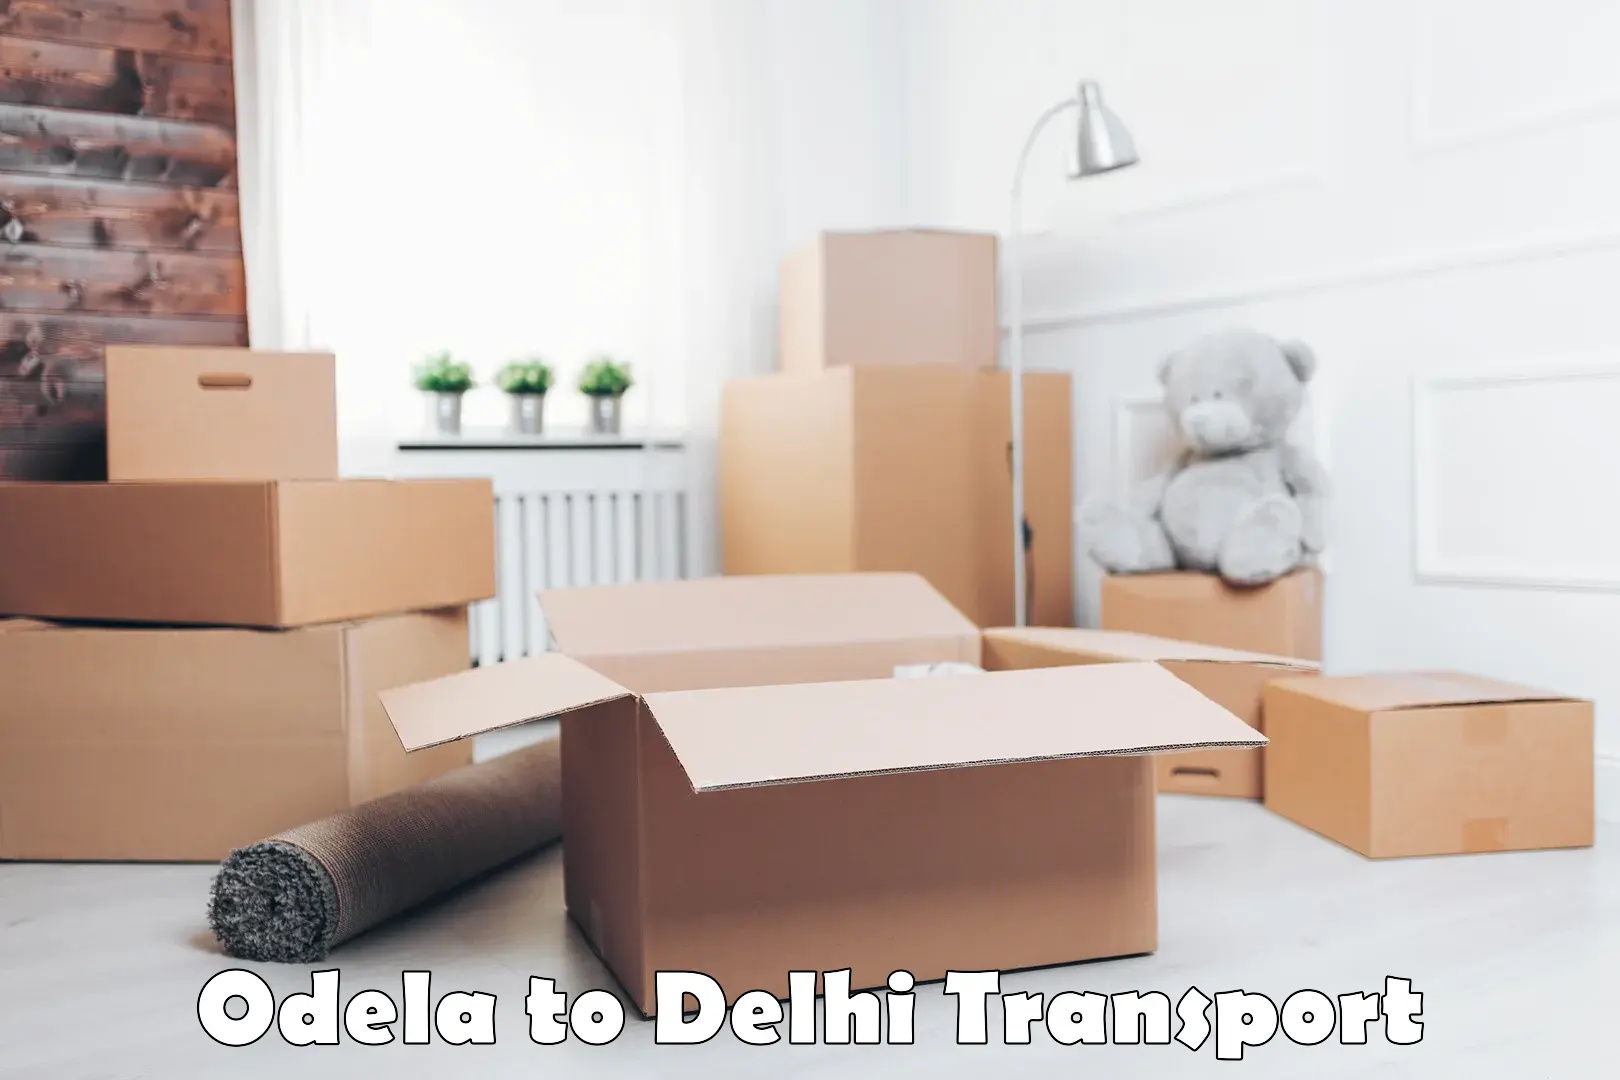 Land transport services Odela to University of Delhi